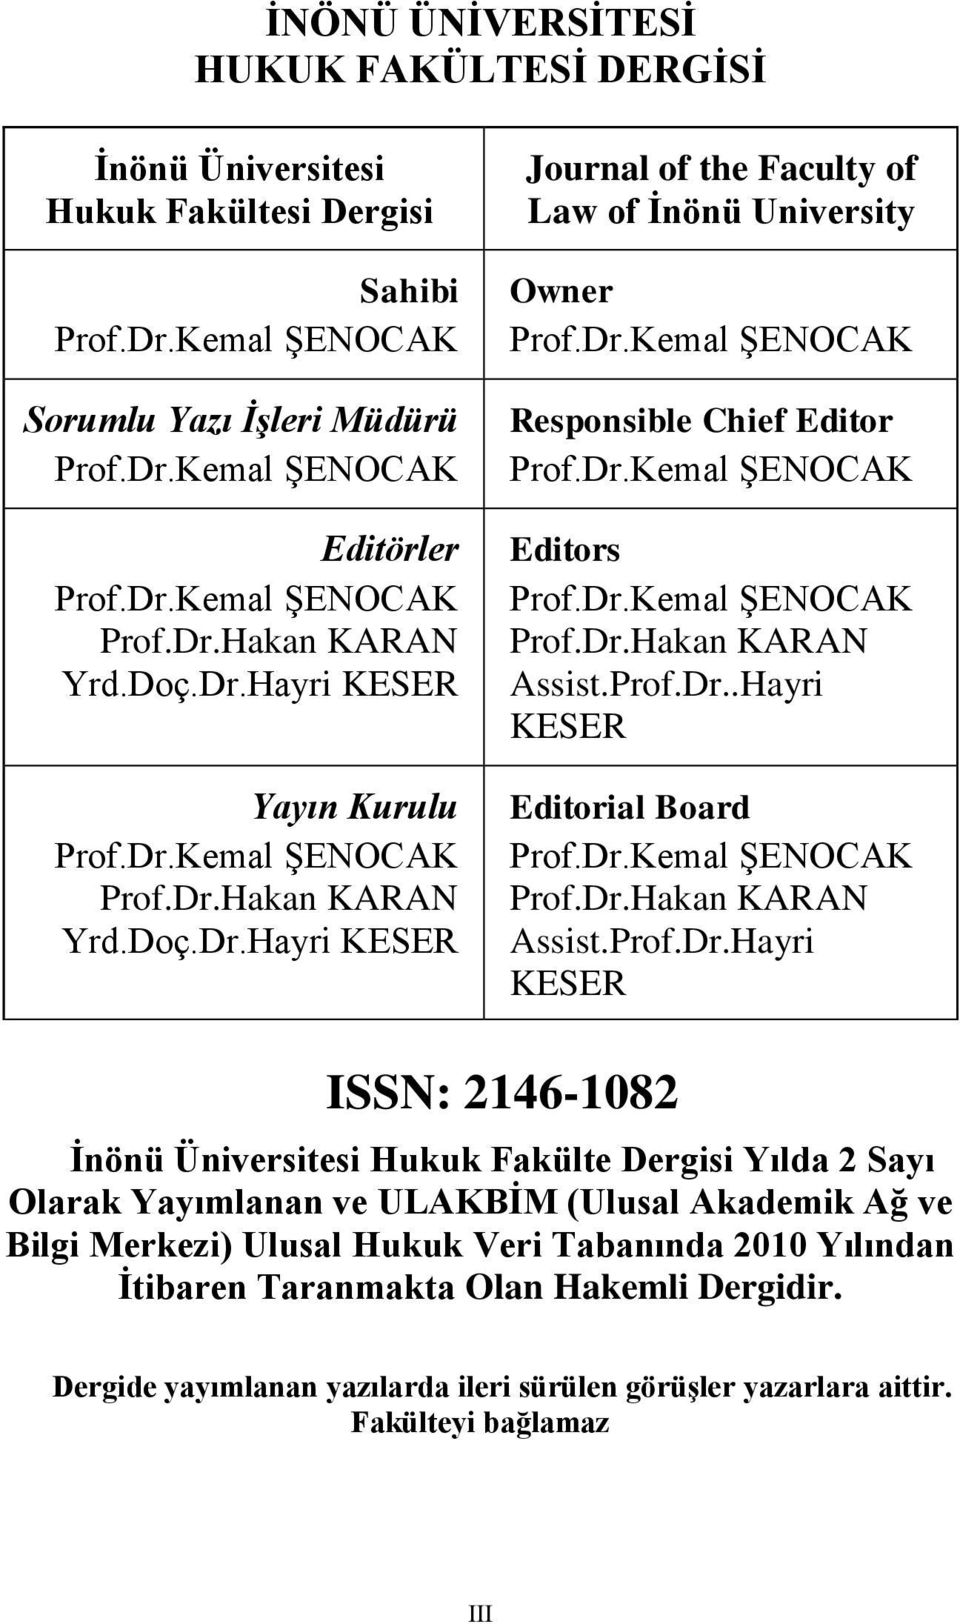 Dr.Kemal ŞENOCAK Editors Prof.Dr.Kemal ŞENOCAK Prof.Dr.Hakan KARAN Assist.Prof.Dr..Hayri KESER Editorial Board Prof.Dr.Kemal ŞENOCAK Prof.Dr.Hakan KARAN Assist.Prof.Dr.Hayri KESER ISSN: 2146-1082